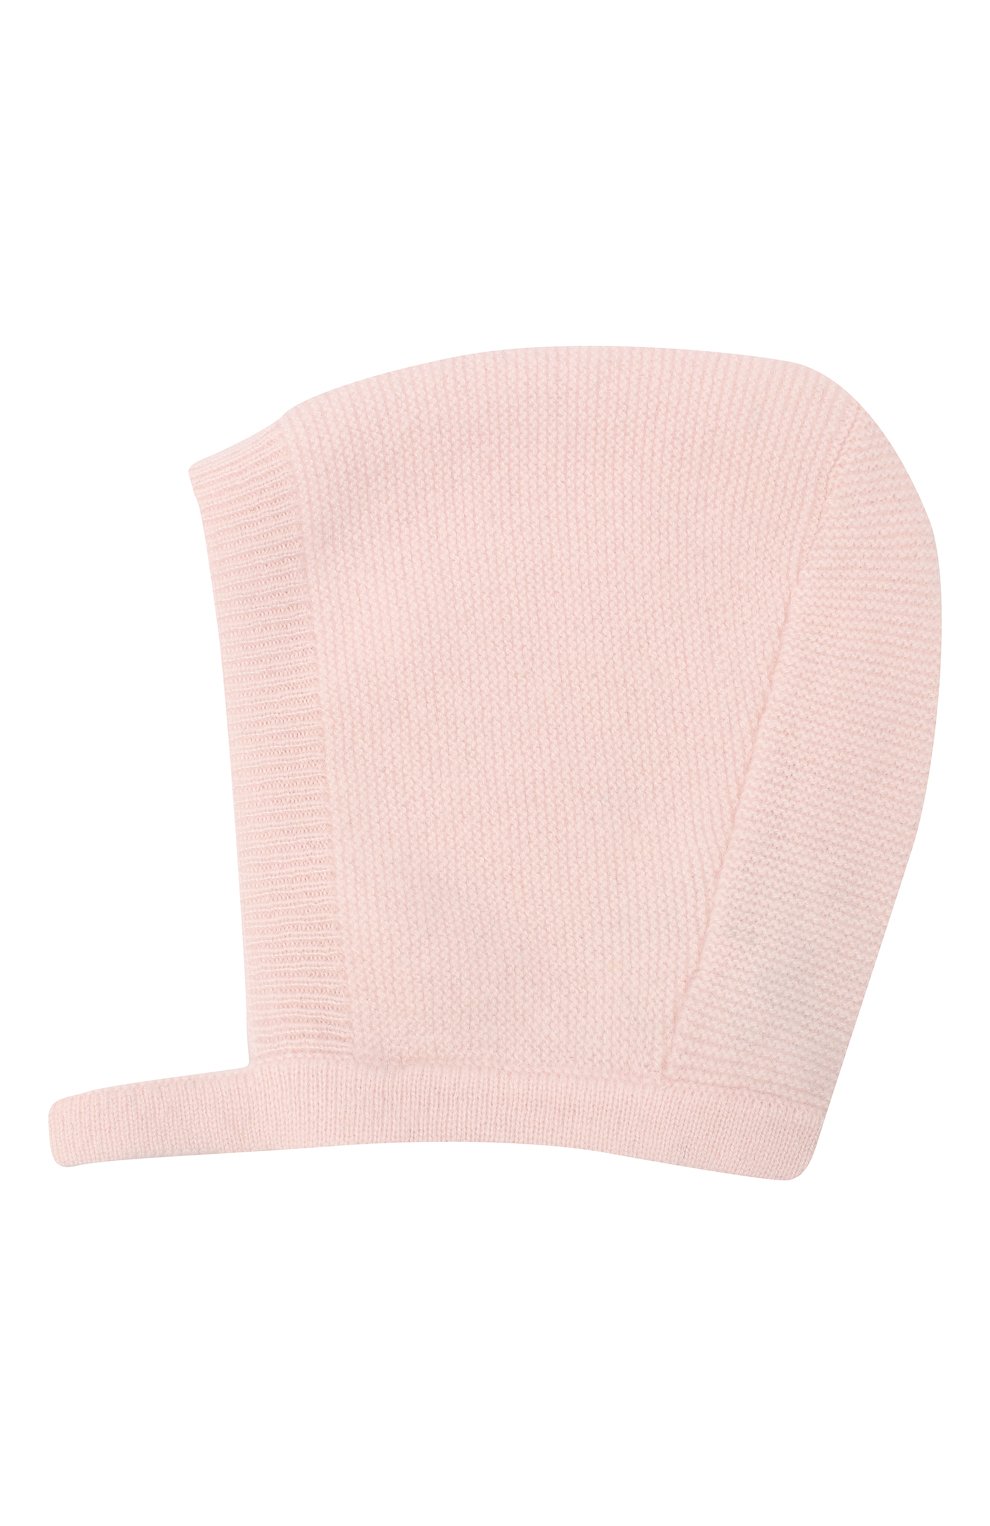 Детского кашемировая шапка LES LUTINS PARIS светло-розового цвета, арт. 20H053/JANE | Фото 2 (Материал: Текстиль, Кашемир, Шерсть)